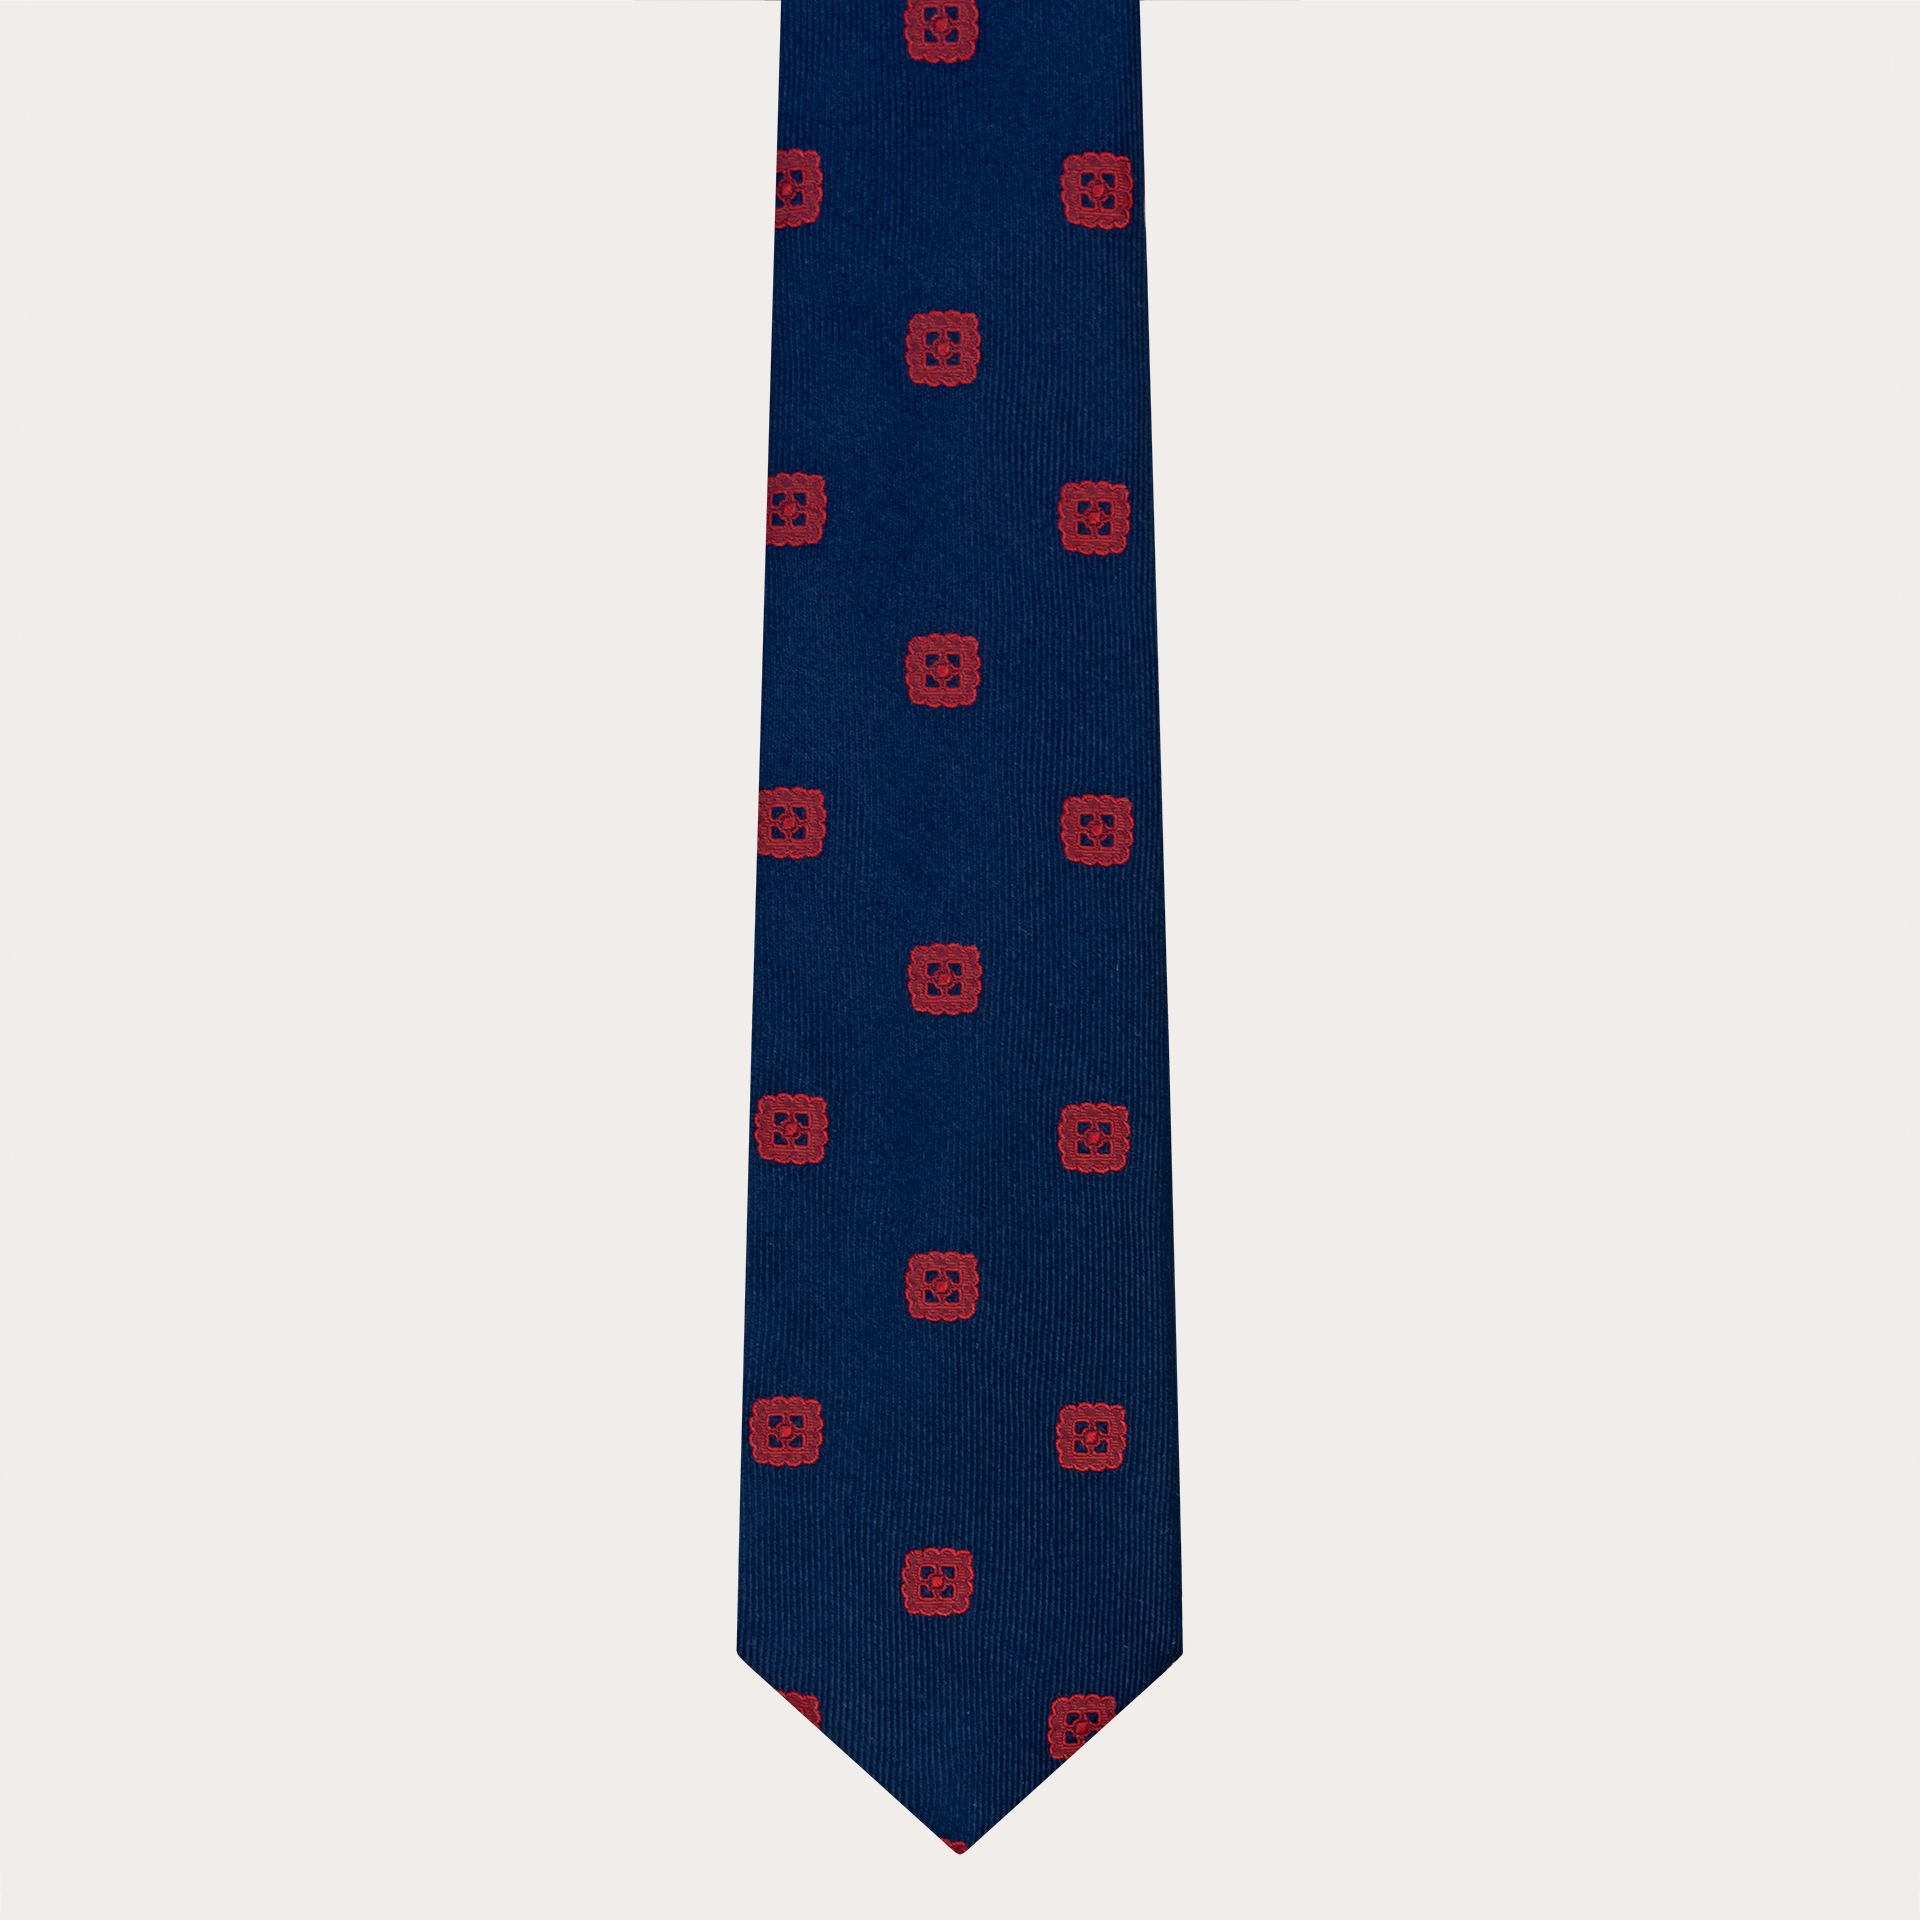 Cravate élégante en soie jacquard, bleu avec broderie rouge